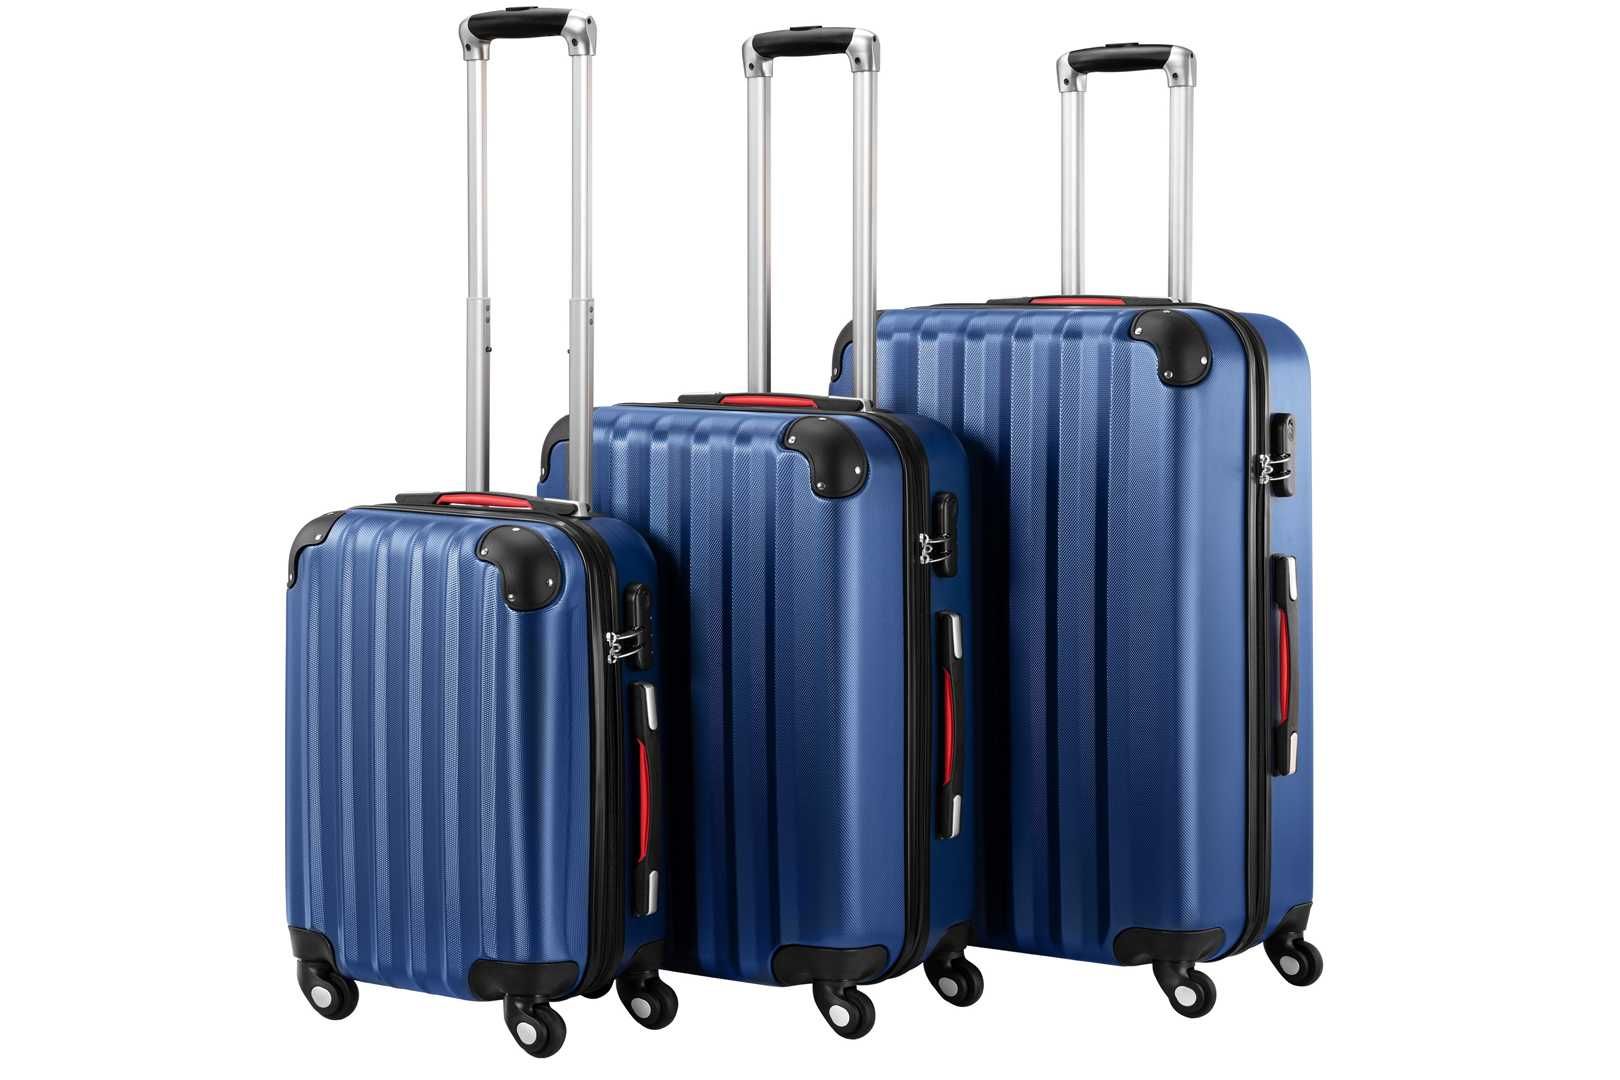 ZESTAW WALIZEK podróżnych walizki na kółkach 3w1 komplet GRANATOWY